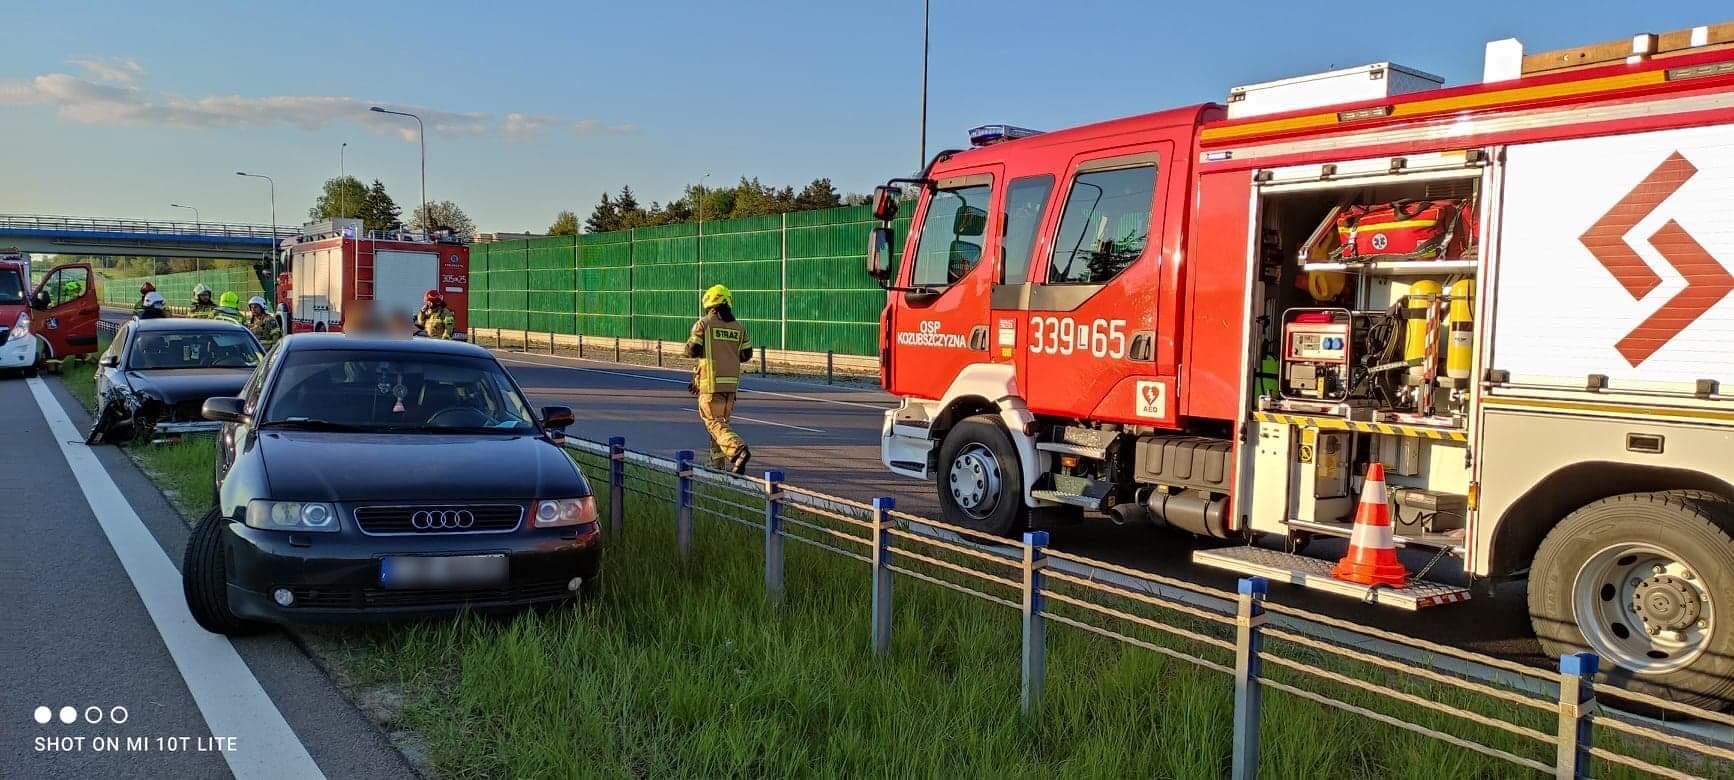 Audi uderzyło w bariery linowe na obwodnicy Lublina (zdjęcia)